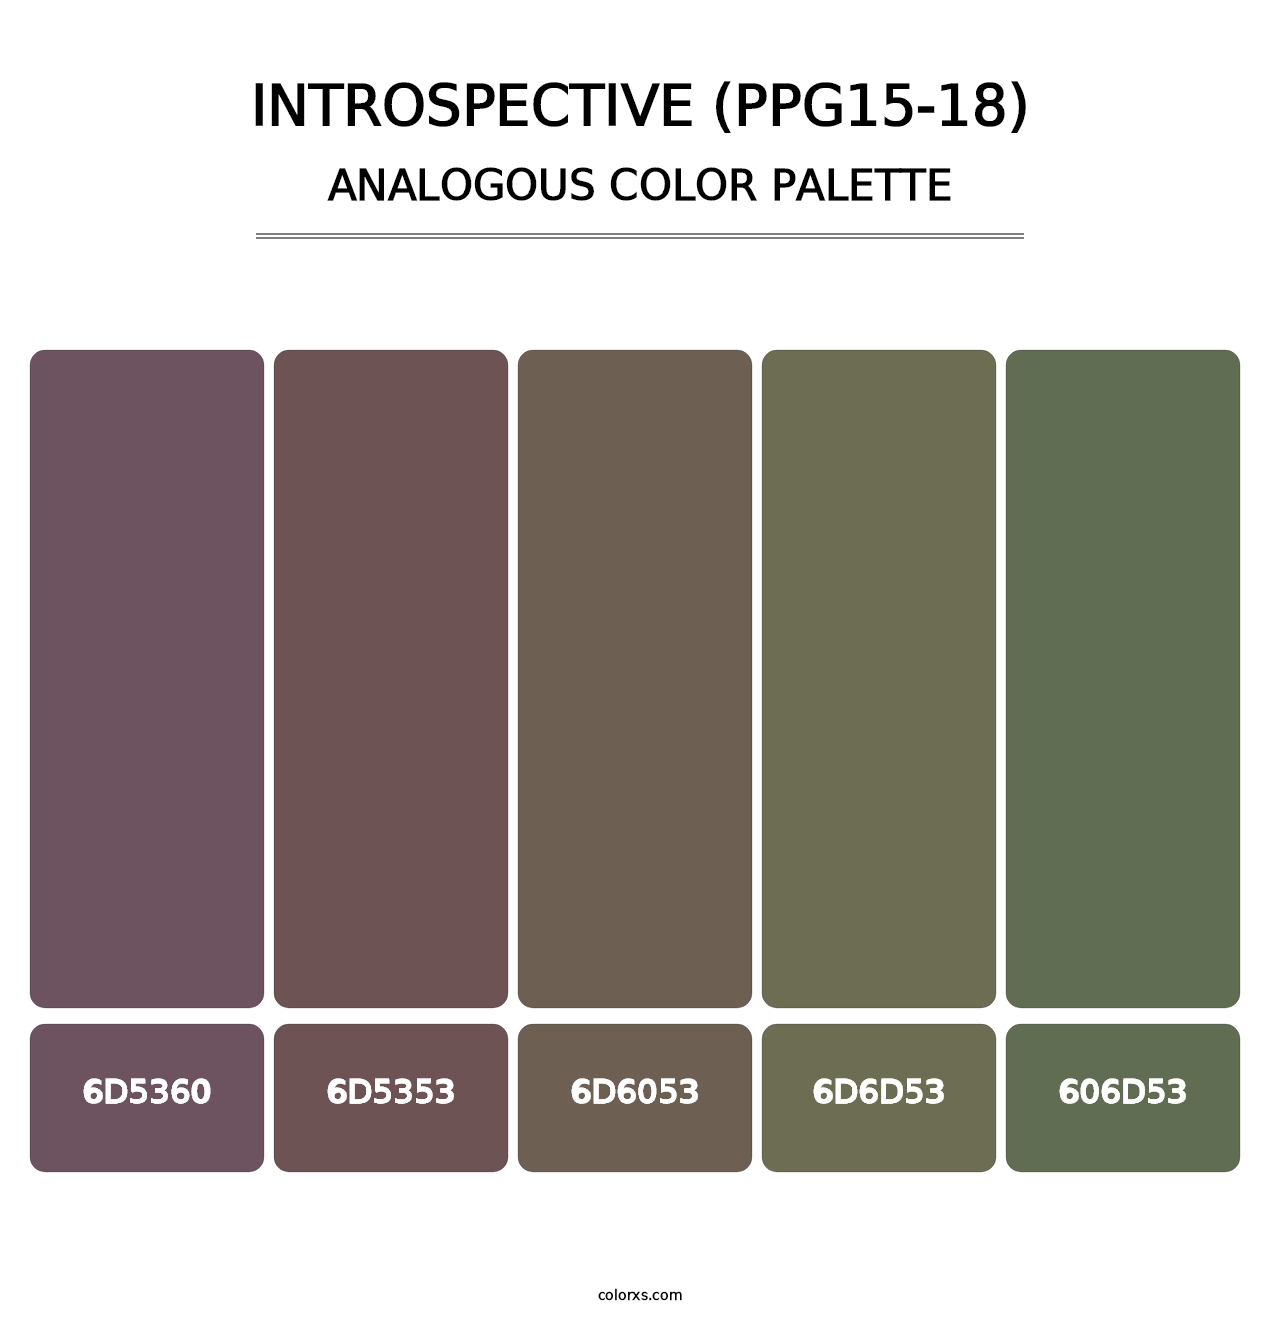 Introspective (PPG15-18) - Analogous Color Palette